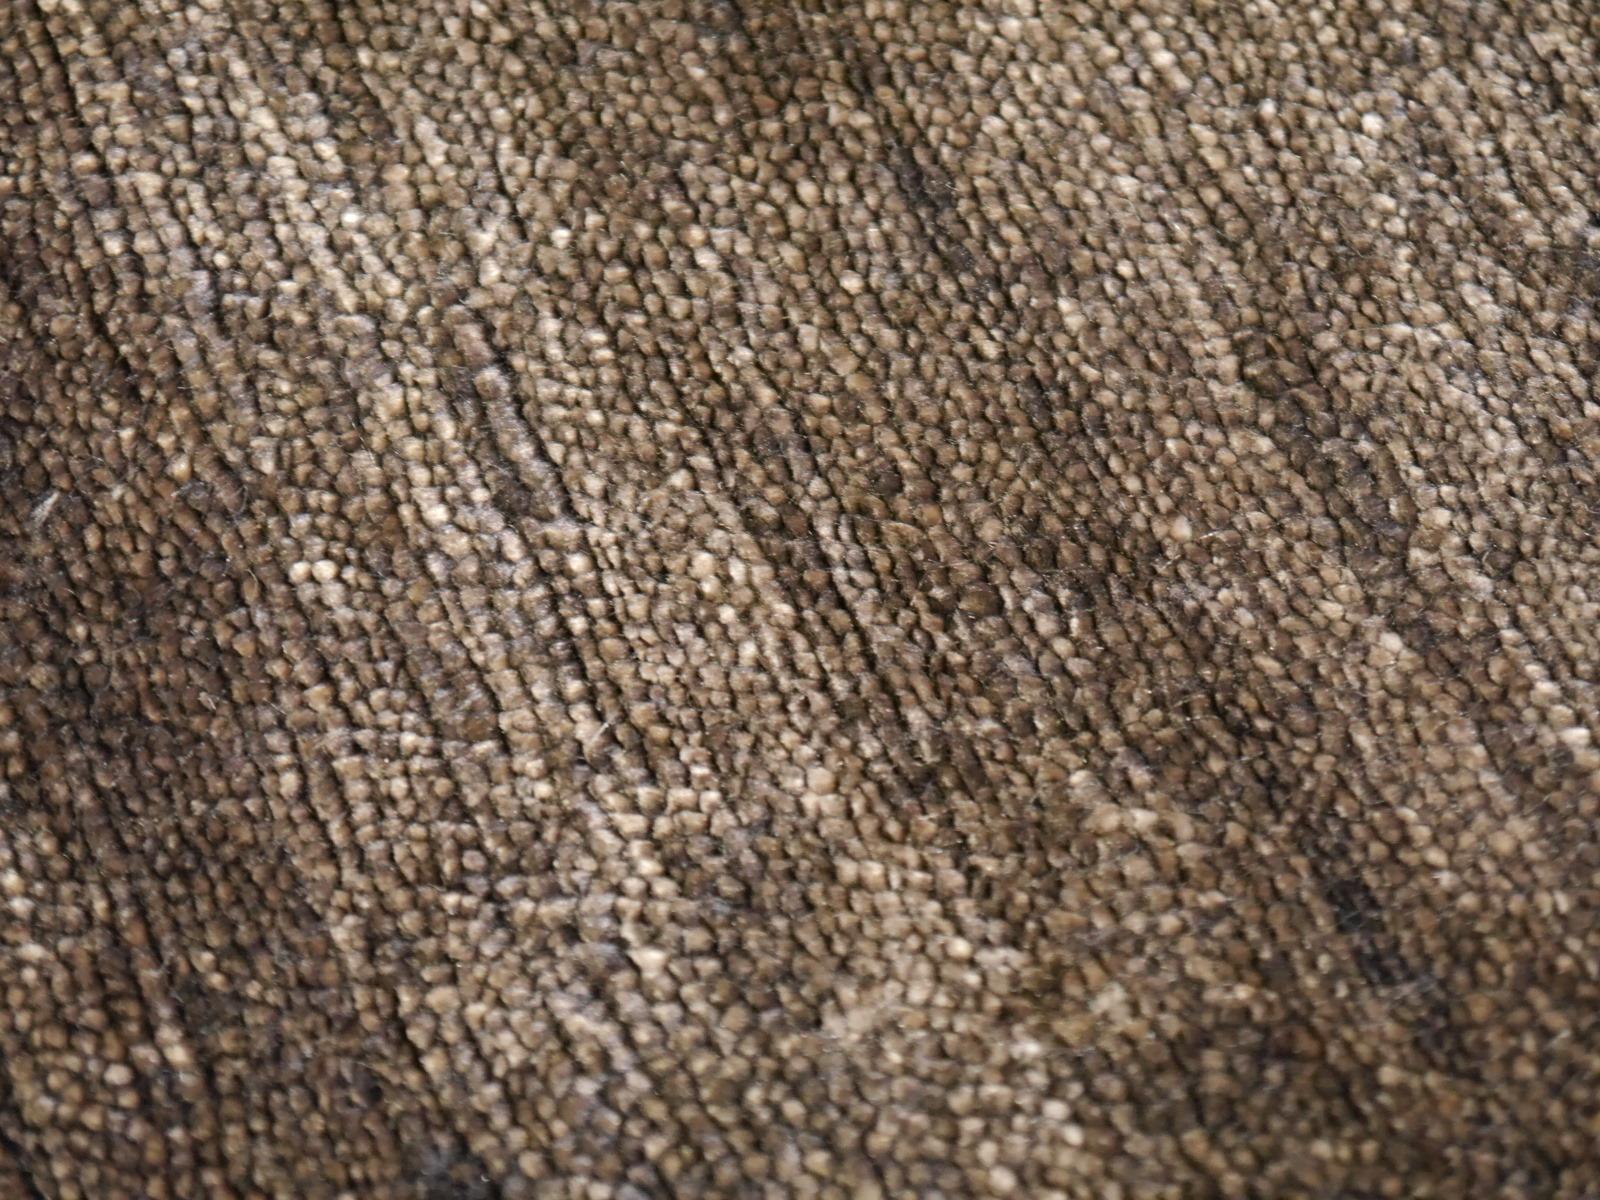 Tapis Perfect Plain Collection couleur choco en soie de bambou par Djoharian Design

Ce tapis uni contemporain de la collection Djoharian est noué à la main en qualité extra fine de 100 nœuds par pouce carré, le tout en soie de bambou filée à la